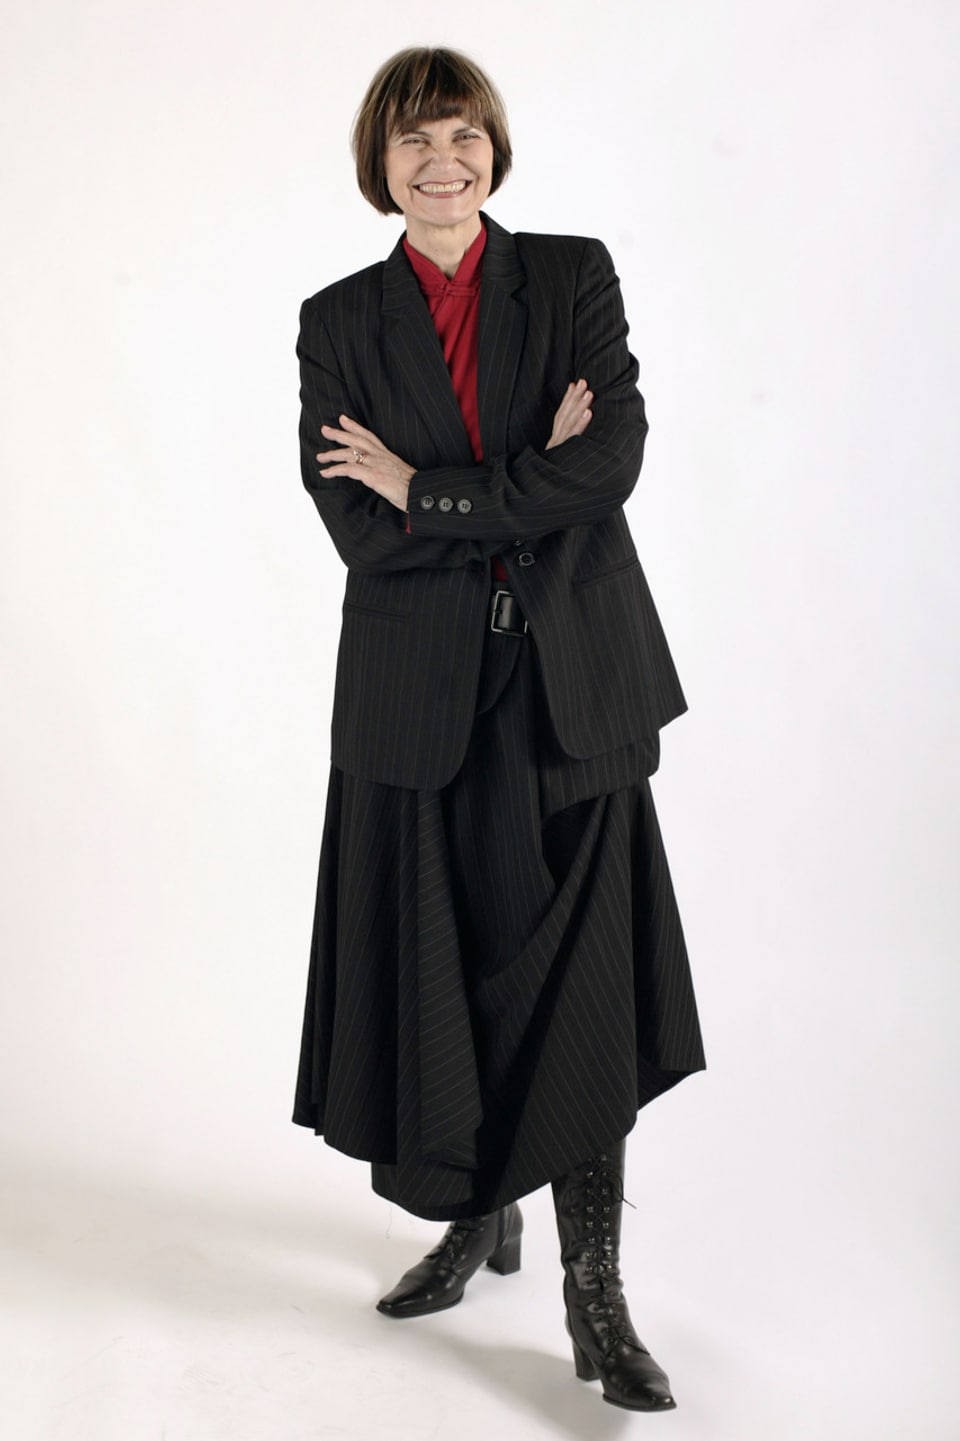 Micheline Calmy-Rey im schwarzen langen Jupe, dunklen Stiefeln, roter Bluse und schwarzem Sakko.